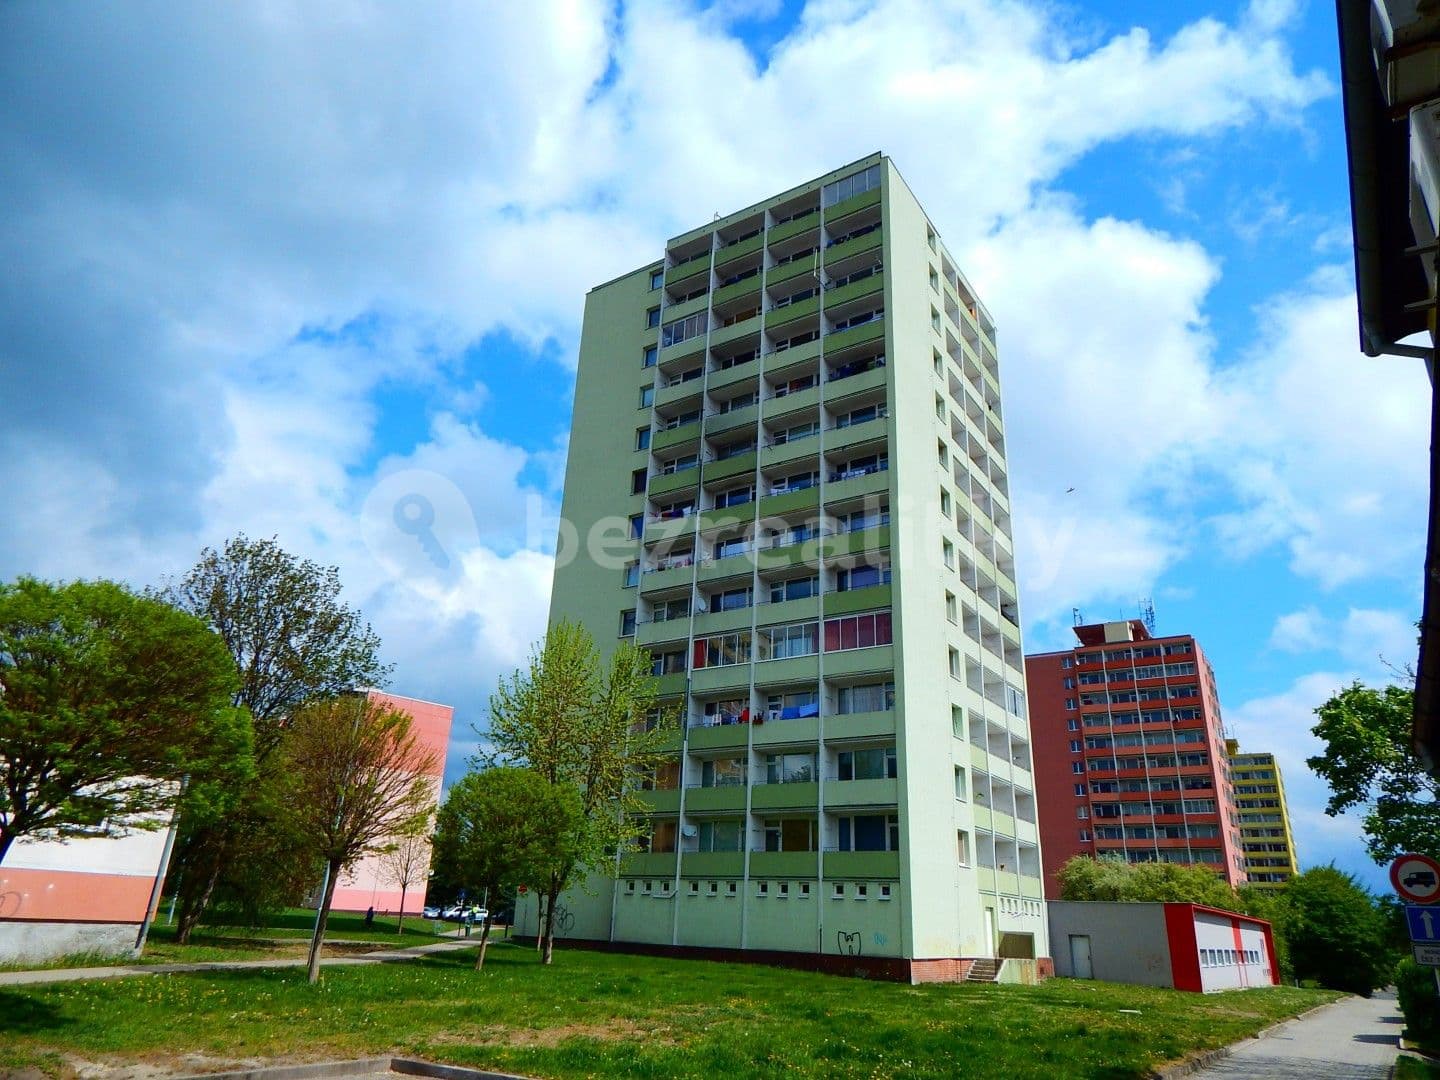 3 bedroom flat for sale, 63 m², Budovatelská, Klášterec nad Ohří, Ústecký Region